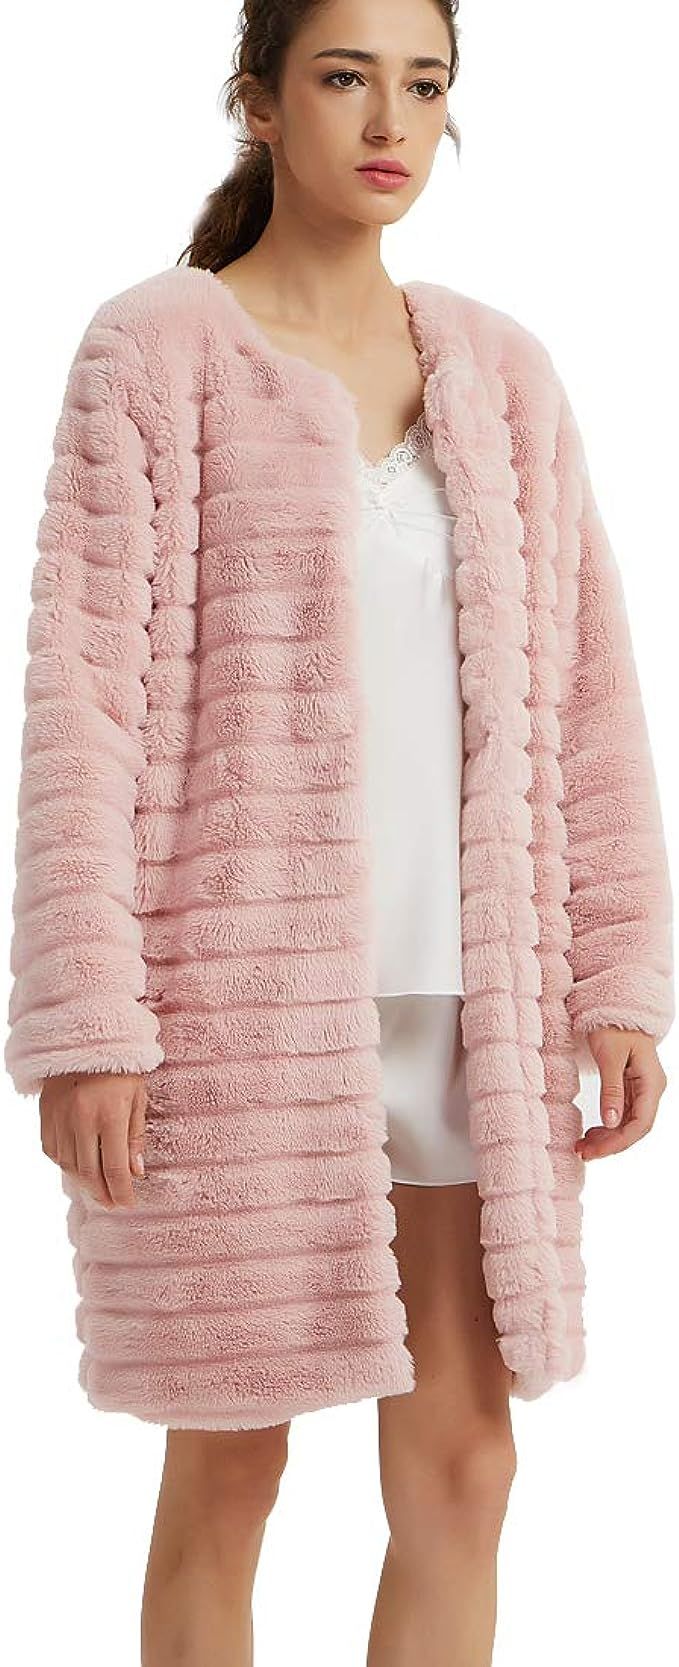 New Dance Women's Short Faux Fur Coat Long Sleeve Luxury Pink Winter Parka Outwear | Amazon (US)